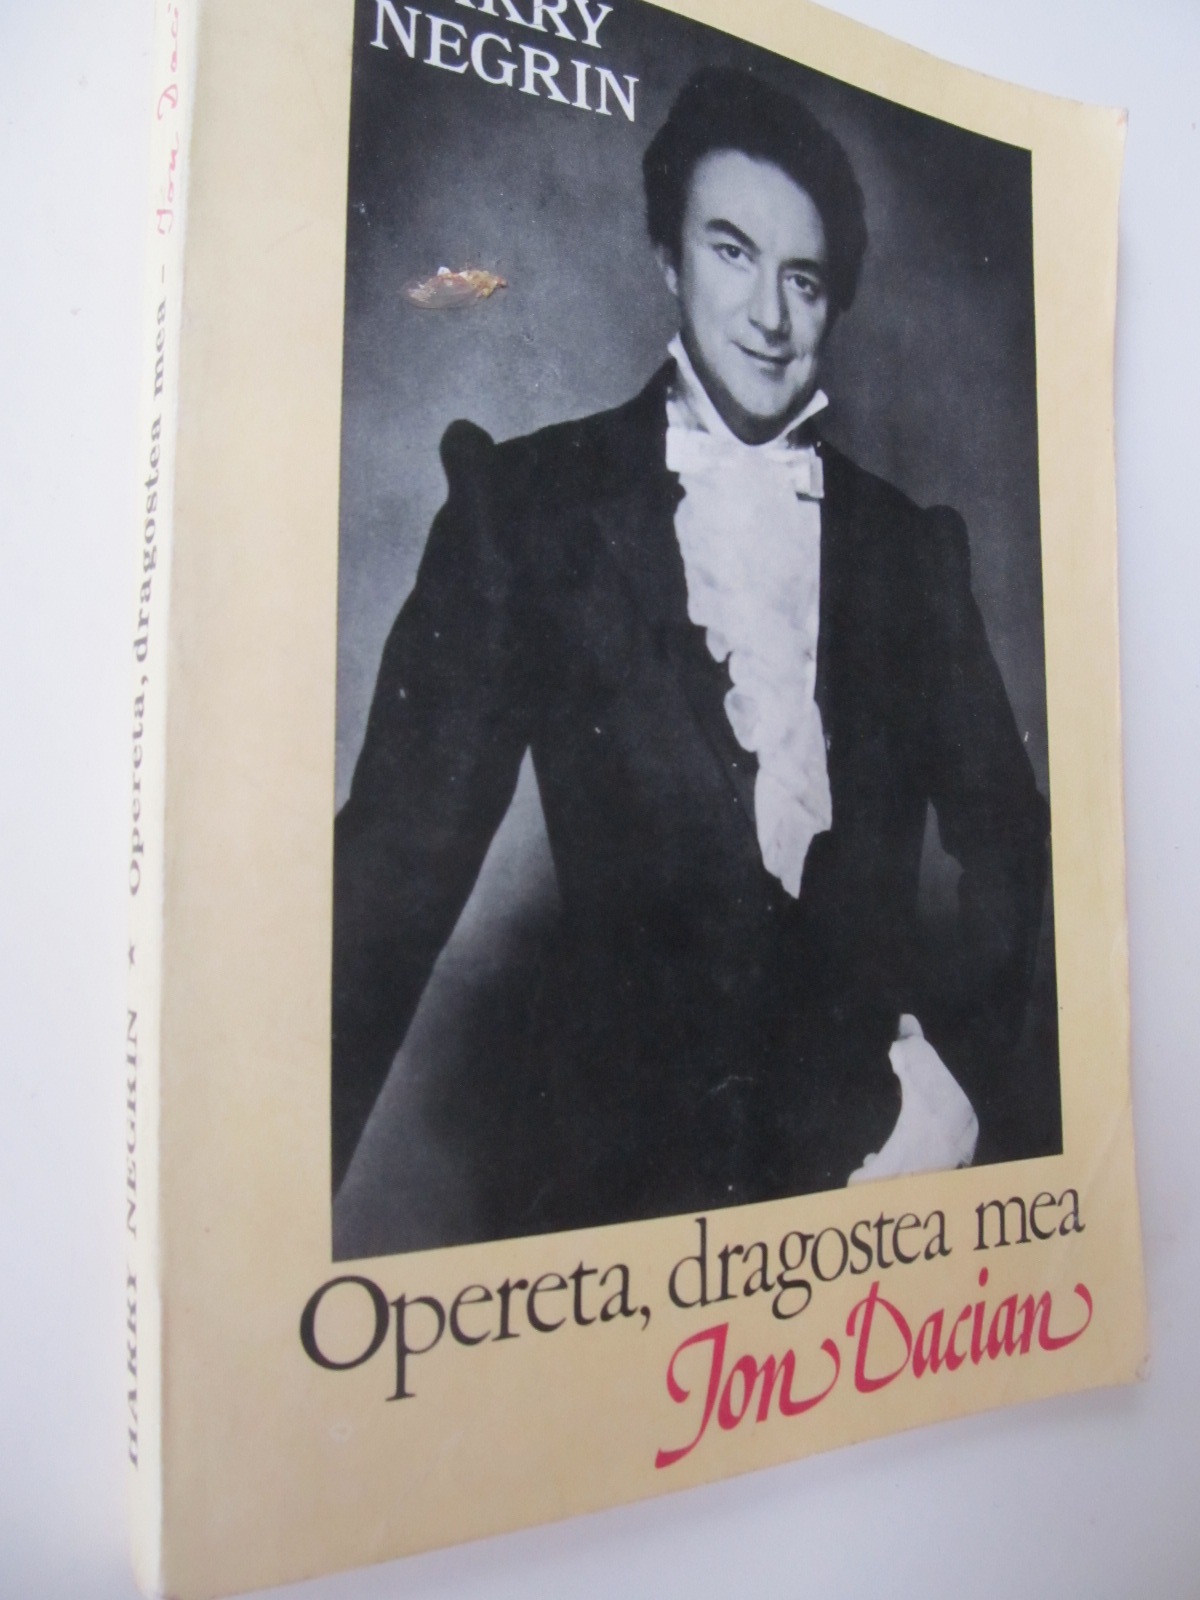 Operta dragostea mea Ion Dacian - Harry Negrin | Detalii carte